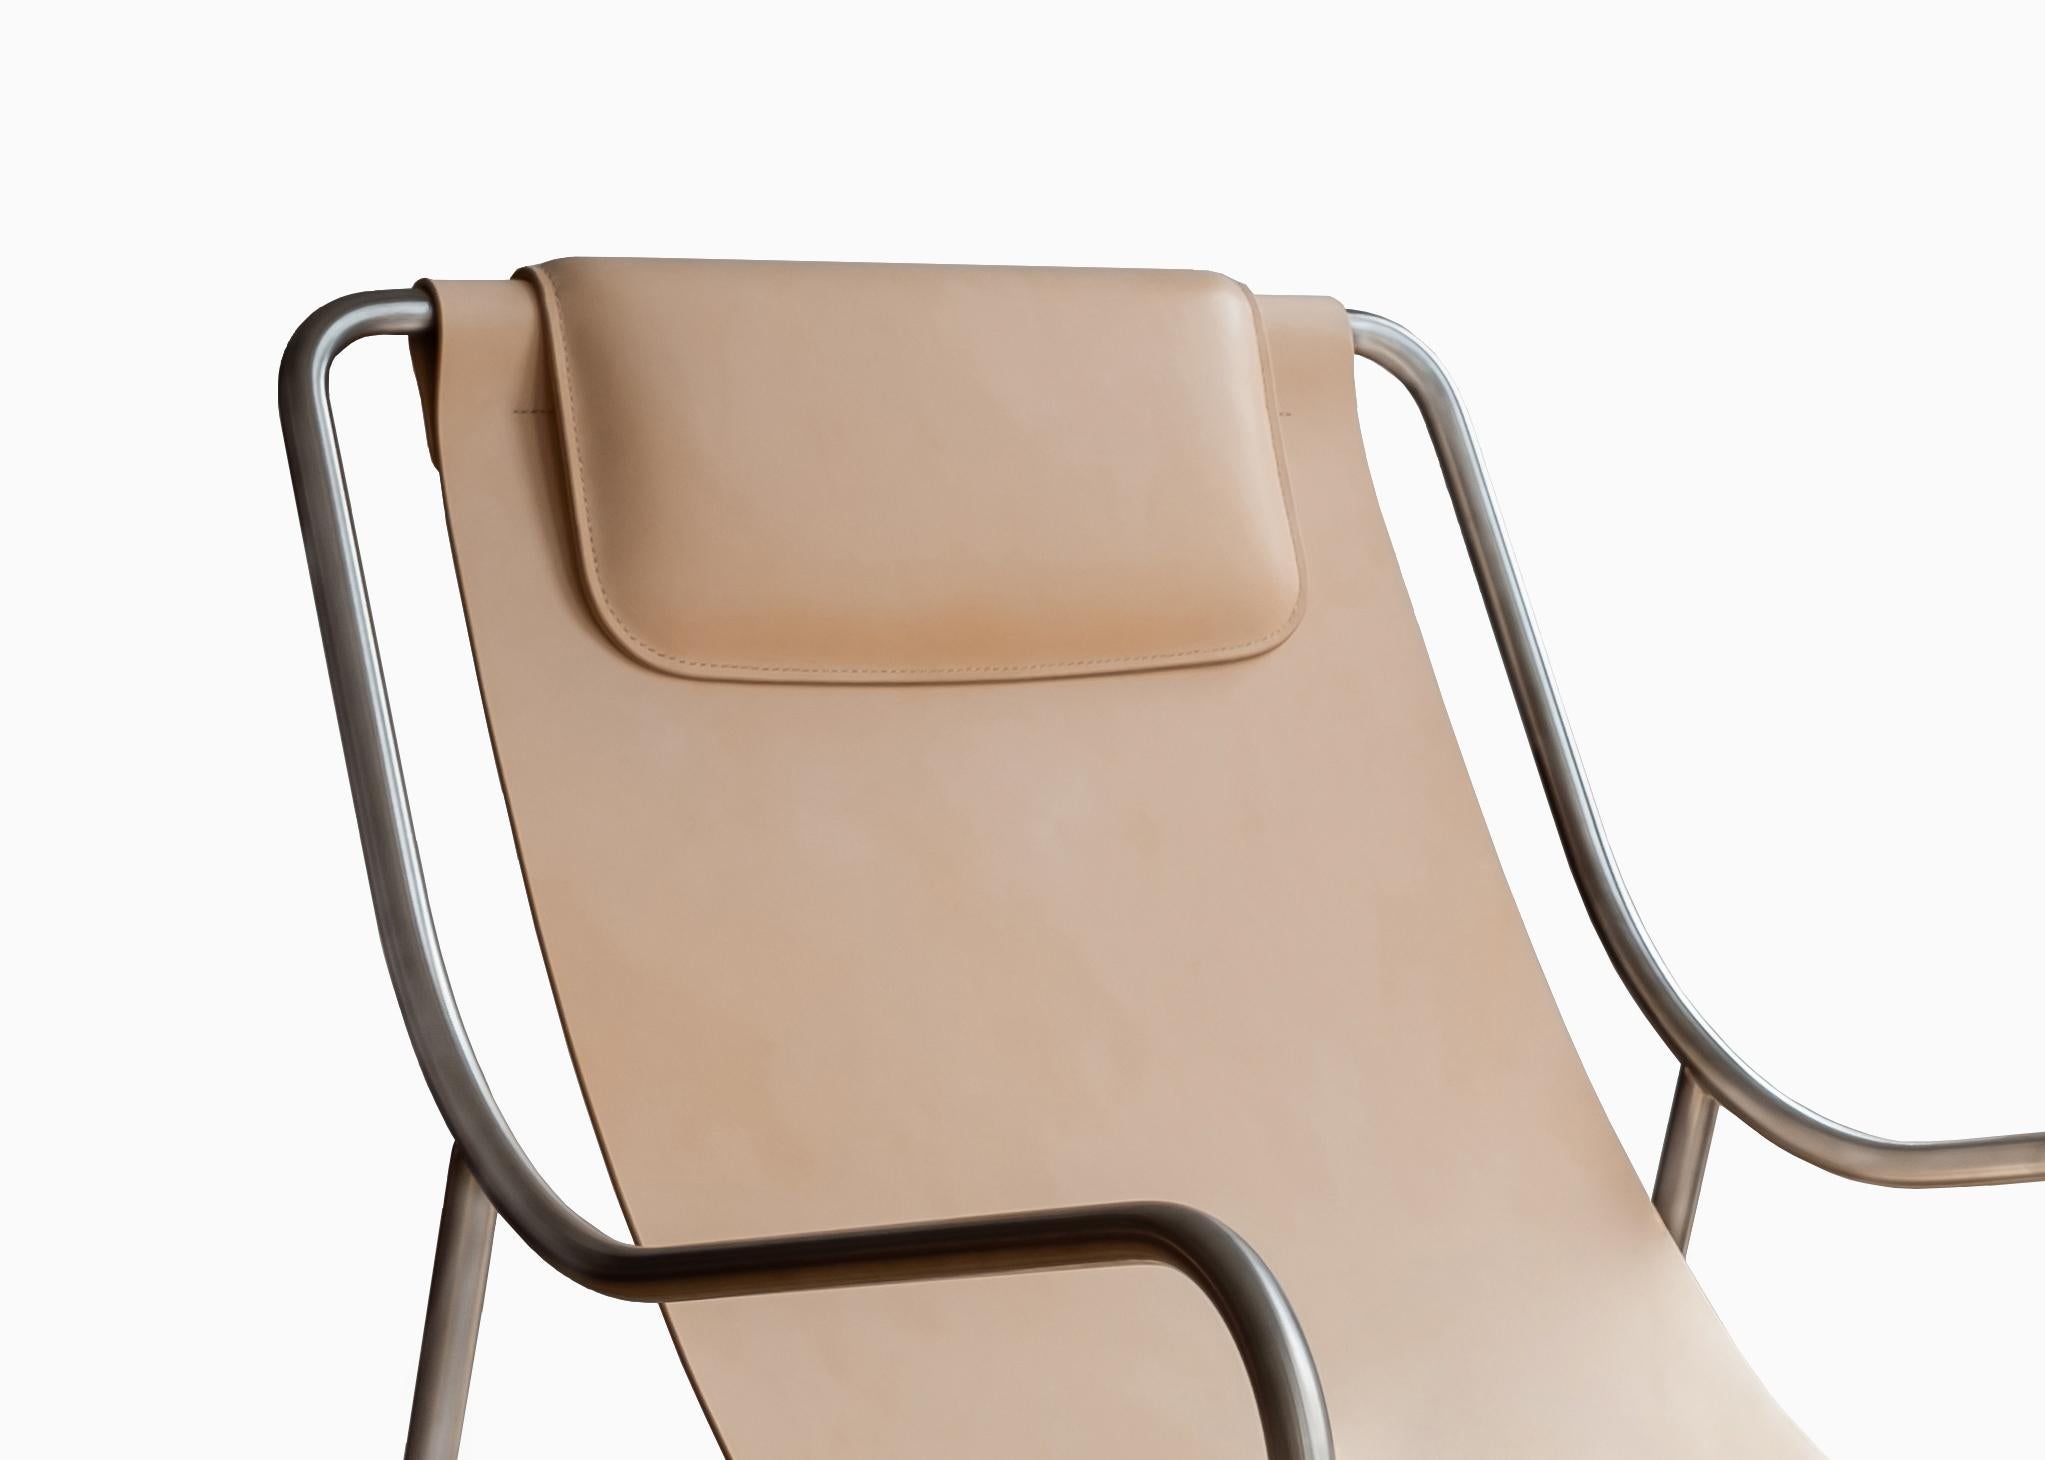 Tirant parti de l'objectif de prendre une pause, la chaise LISBOA vous invite à vous asseoir et à vous détendre. En combinant de nombreuses observations provenant de différentes cultures de la façon dont les gens utilisent les chaises et dont ils